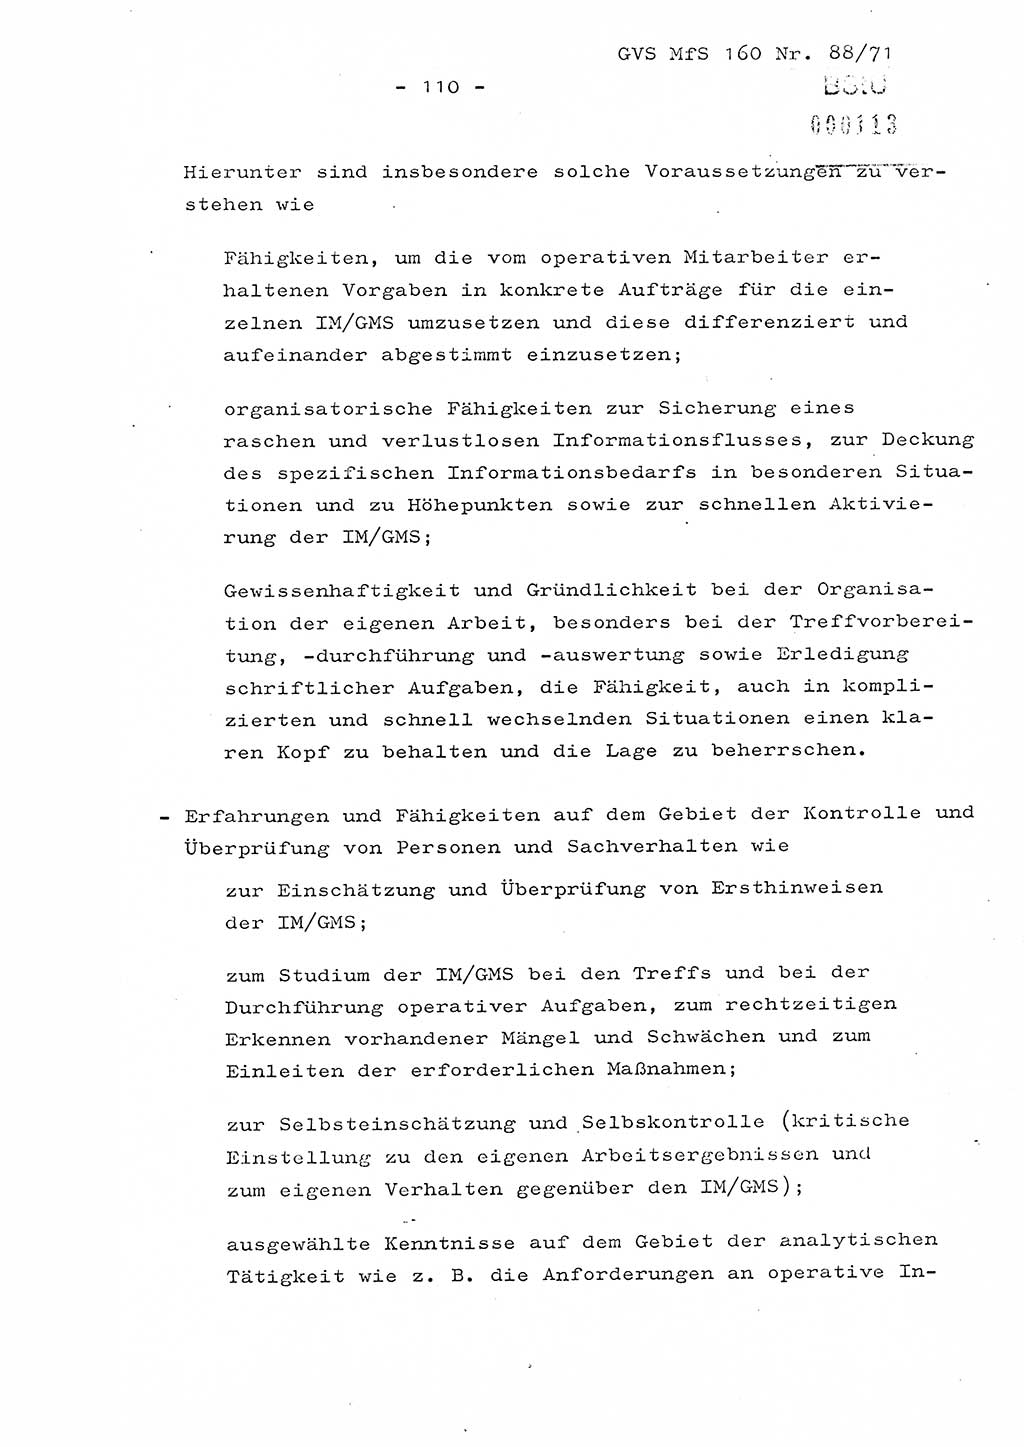 Dissertation Oberstleutnant Josef Schwarz (BV Schwerin), Major Fritz Amm (JHS), Hauptmann Peter Gräßler (JHS), Ministerium für Staatssicherheit (MfS) [Deutsche Demokratische Republik (DDR)], Juristische Hochschule (JHS), Geheime Verschlußsache (GVS) 160-88/71, Potsdam 1972, Seite 110 (Diss. MfS DDR JHS GVS 160-88/71 1972, S. 110)